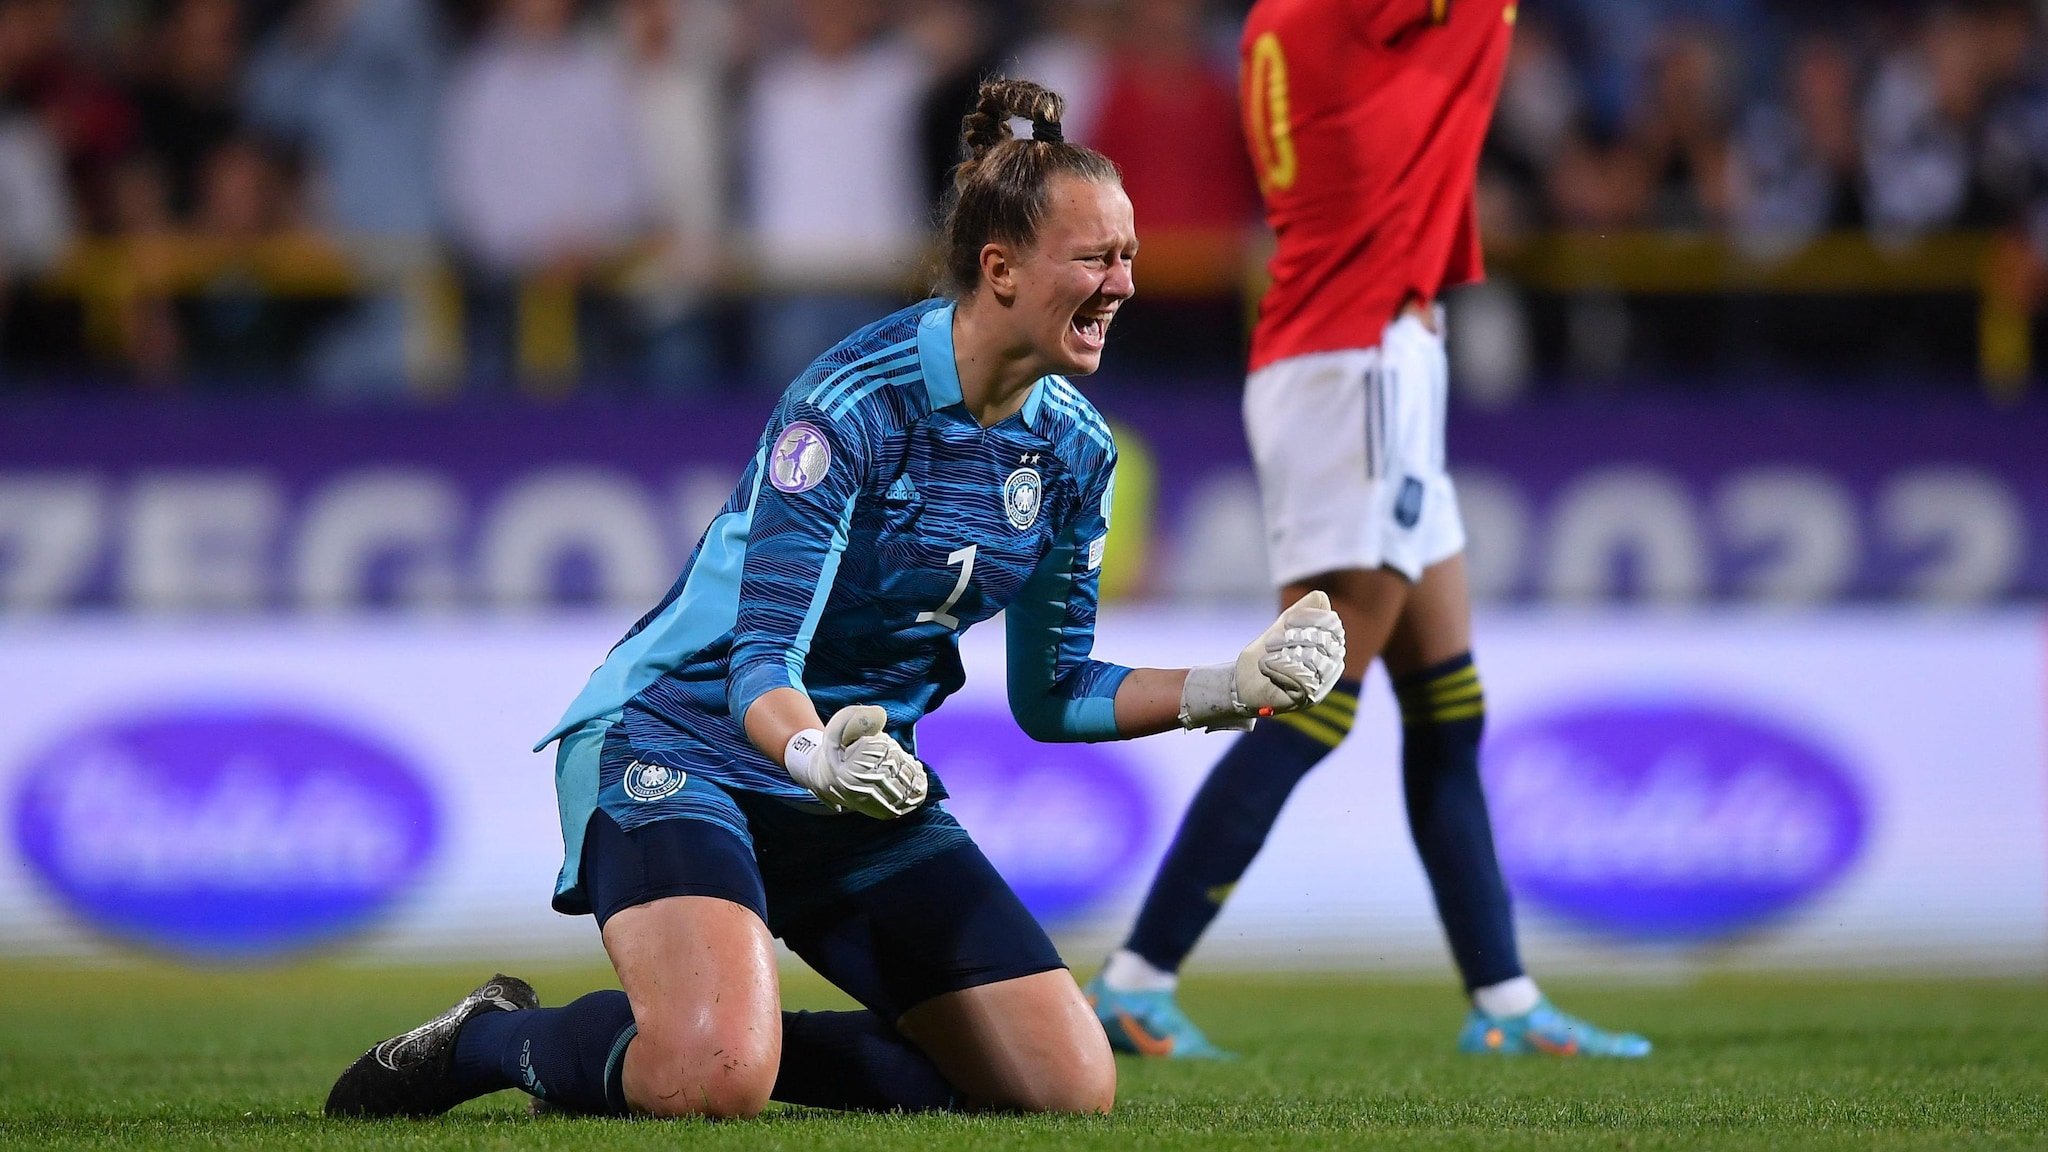 Alemania 2-2 España (3-2 Pen): la final de la Eurocopa Sub-17 femenina acaba en drama de penaltis |  Mujeres menores de 17 años